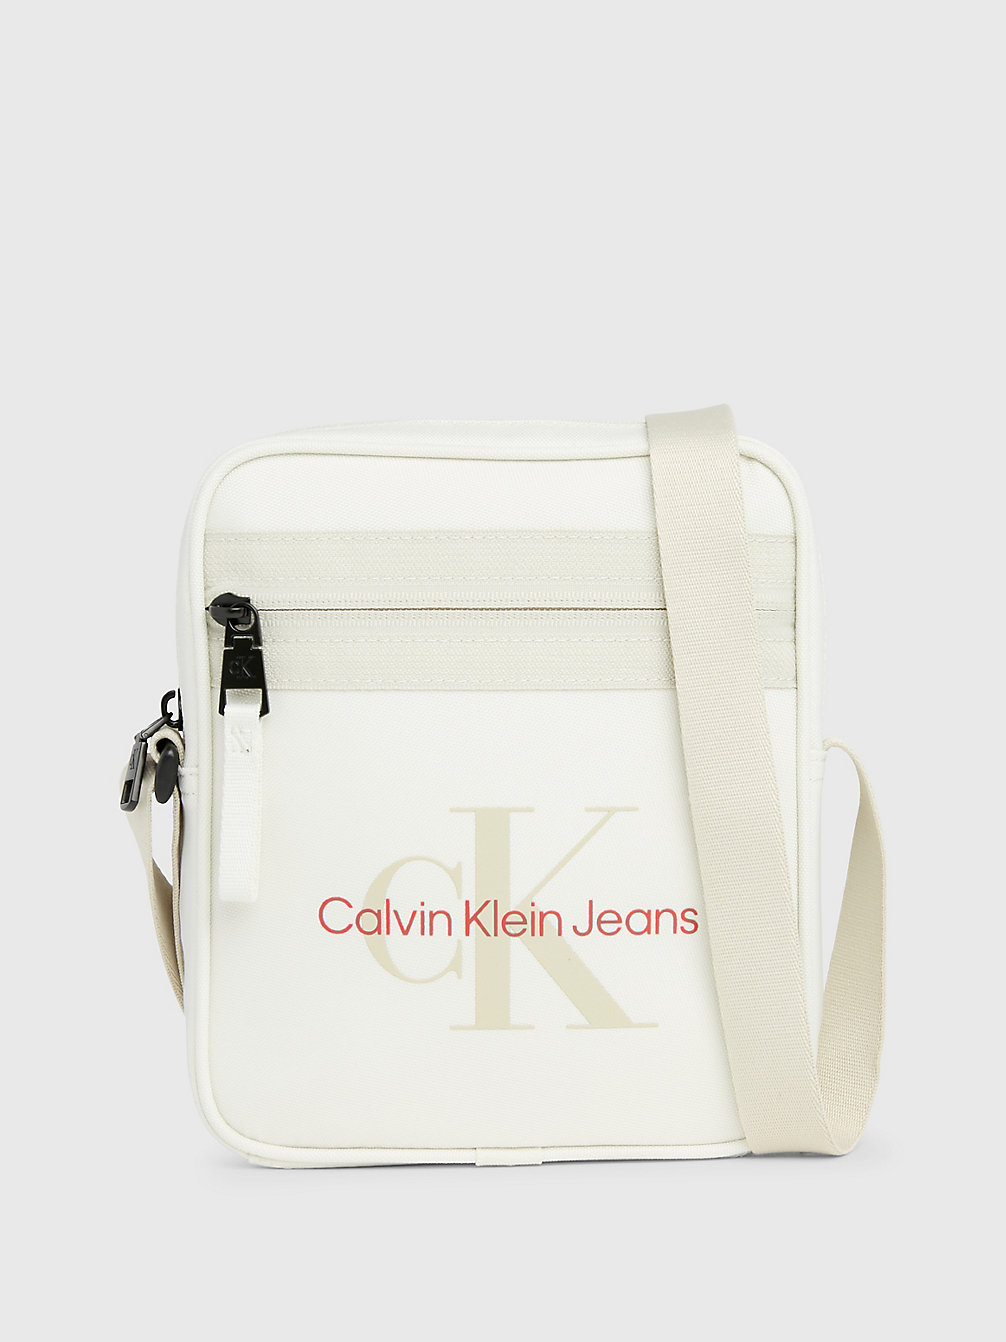 ICICLE Borsa Reporter A Tracolla Con Logo undefined Uomini Calvin Klein